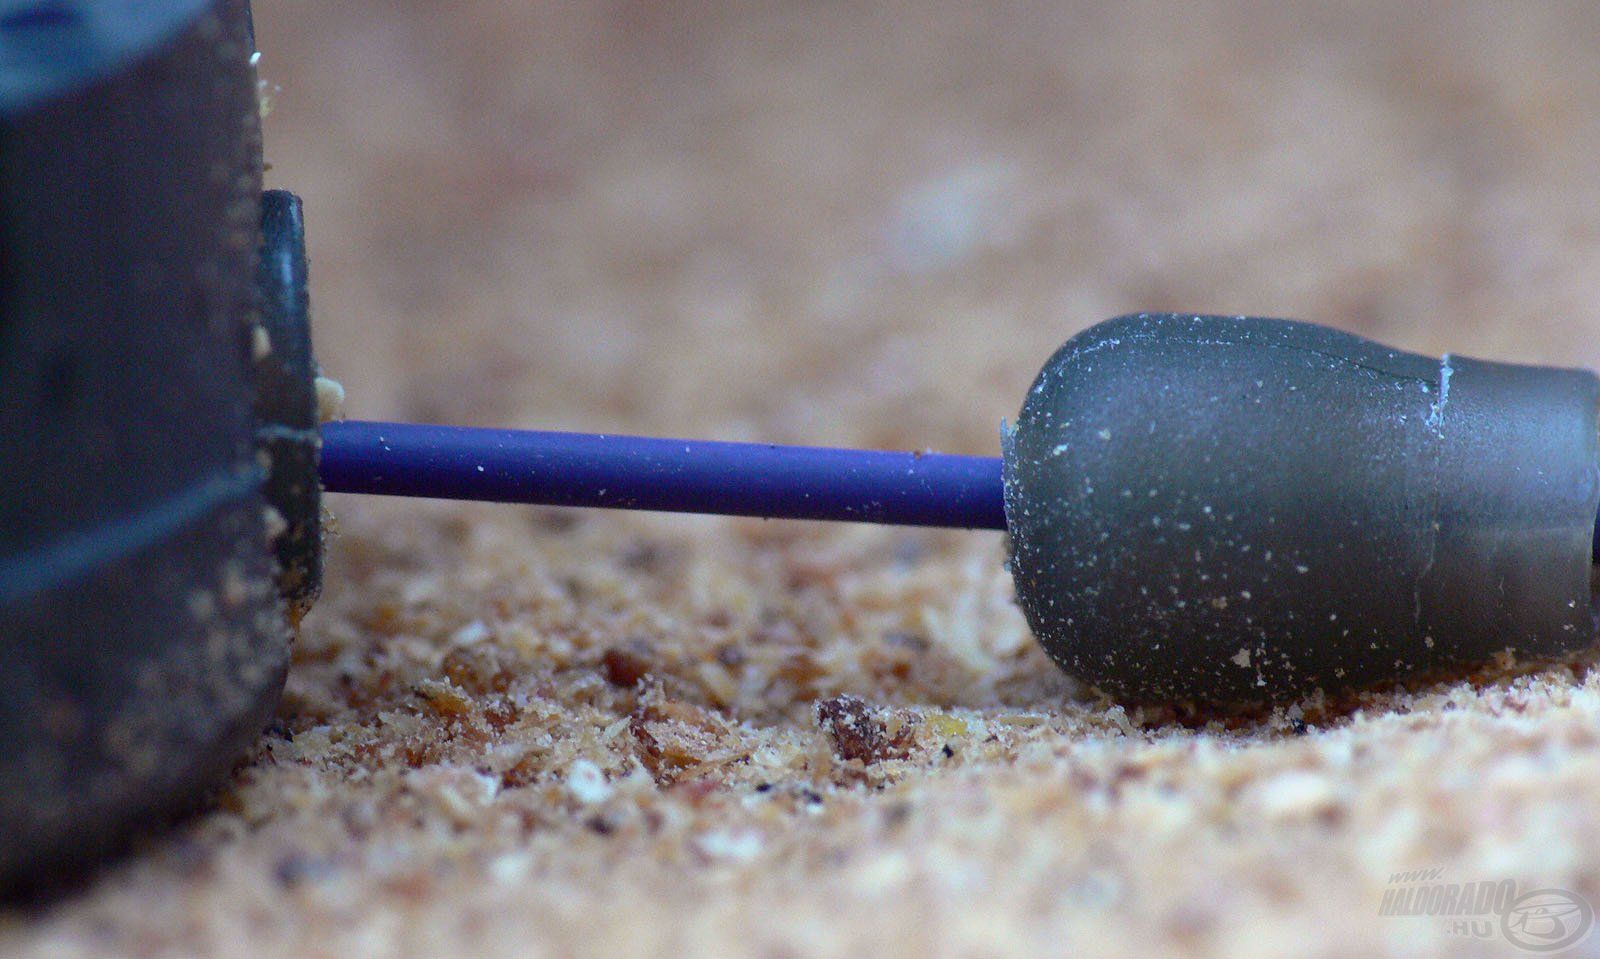 A Dura Banjo Feeder – gumis, annyiban különbözik, hogy a szárában egy gumi van, tehát fix maga a kosár